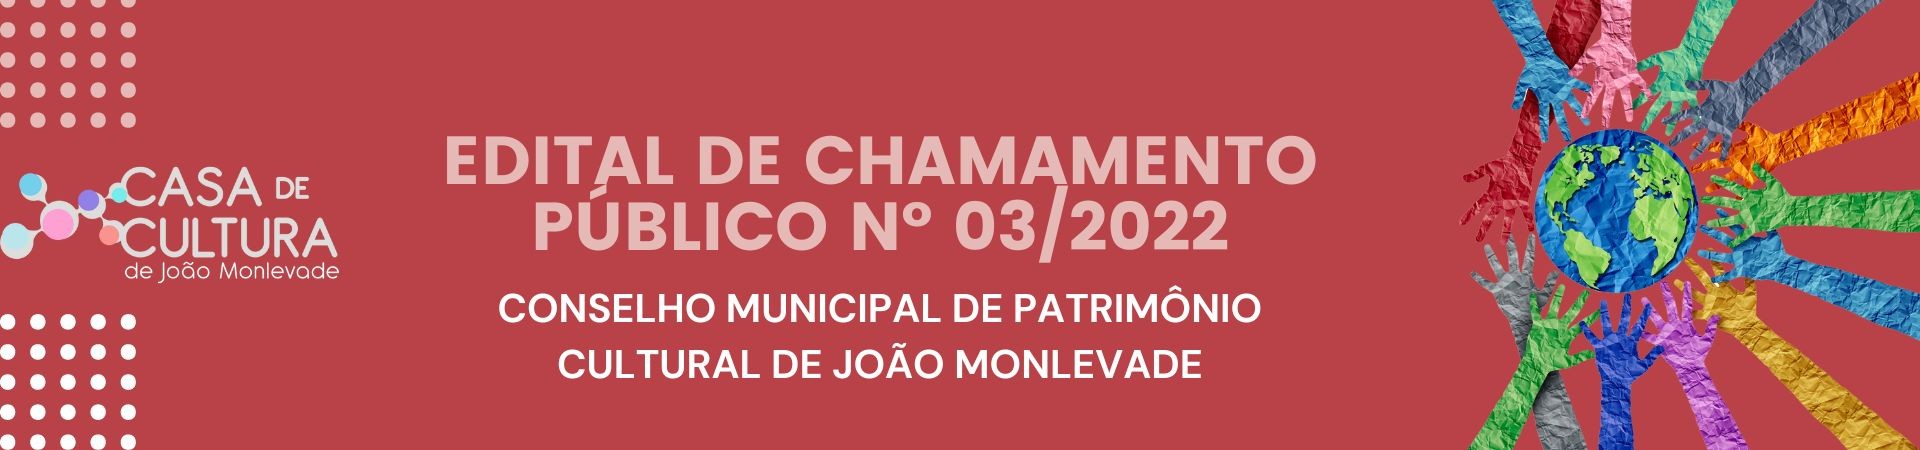 EDITAL DE CHAMAMENTO PÚBLICO Nº 03/2022 CONSELHO MUNICIPAL DE PATRIMÔNIO CULTURA